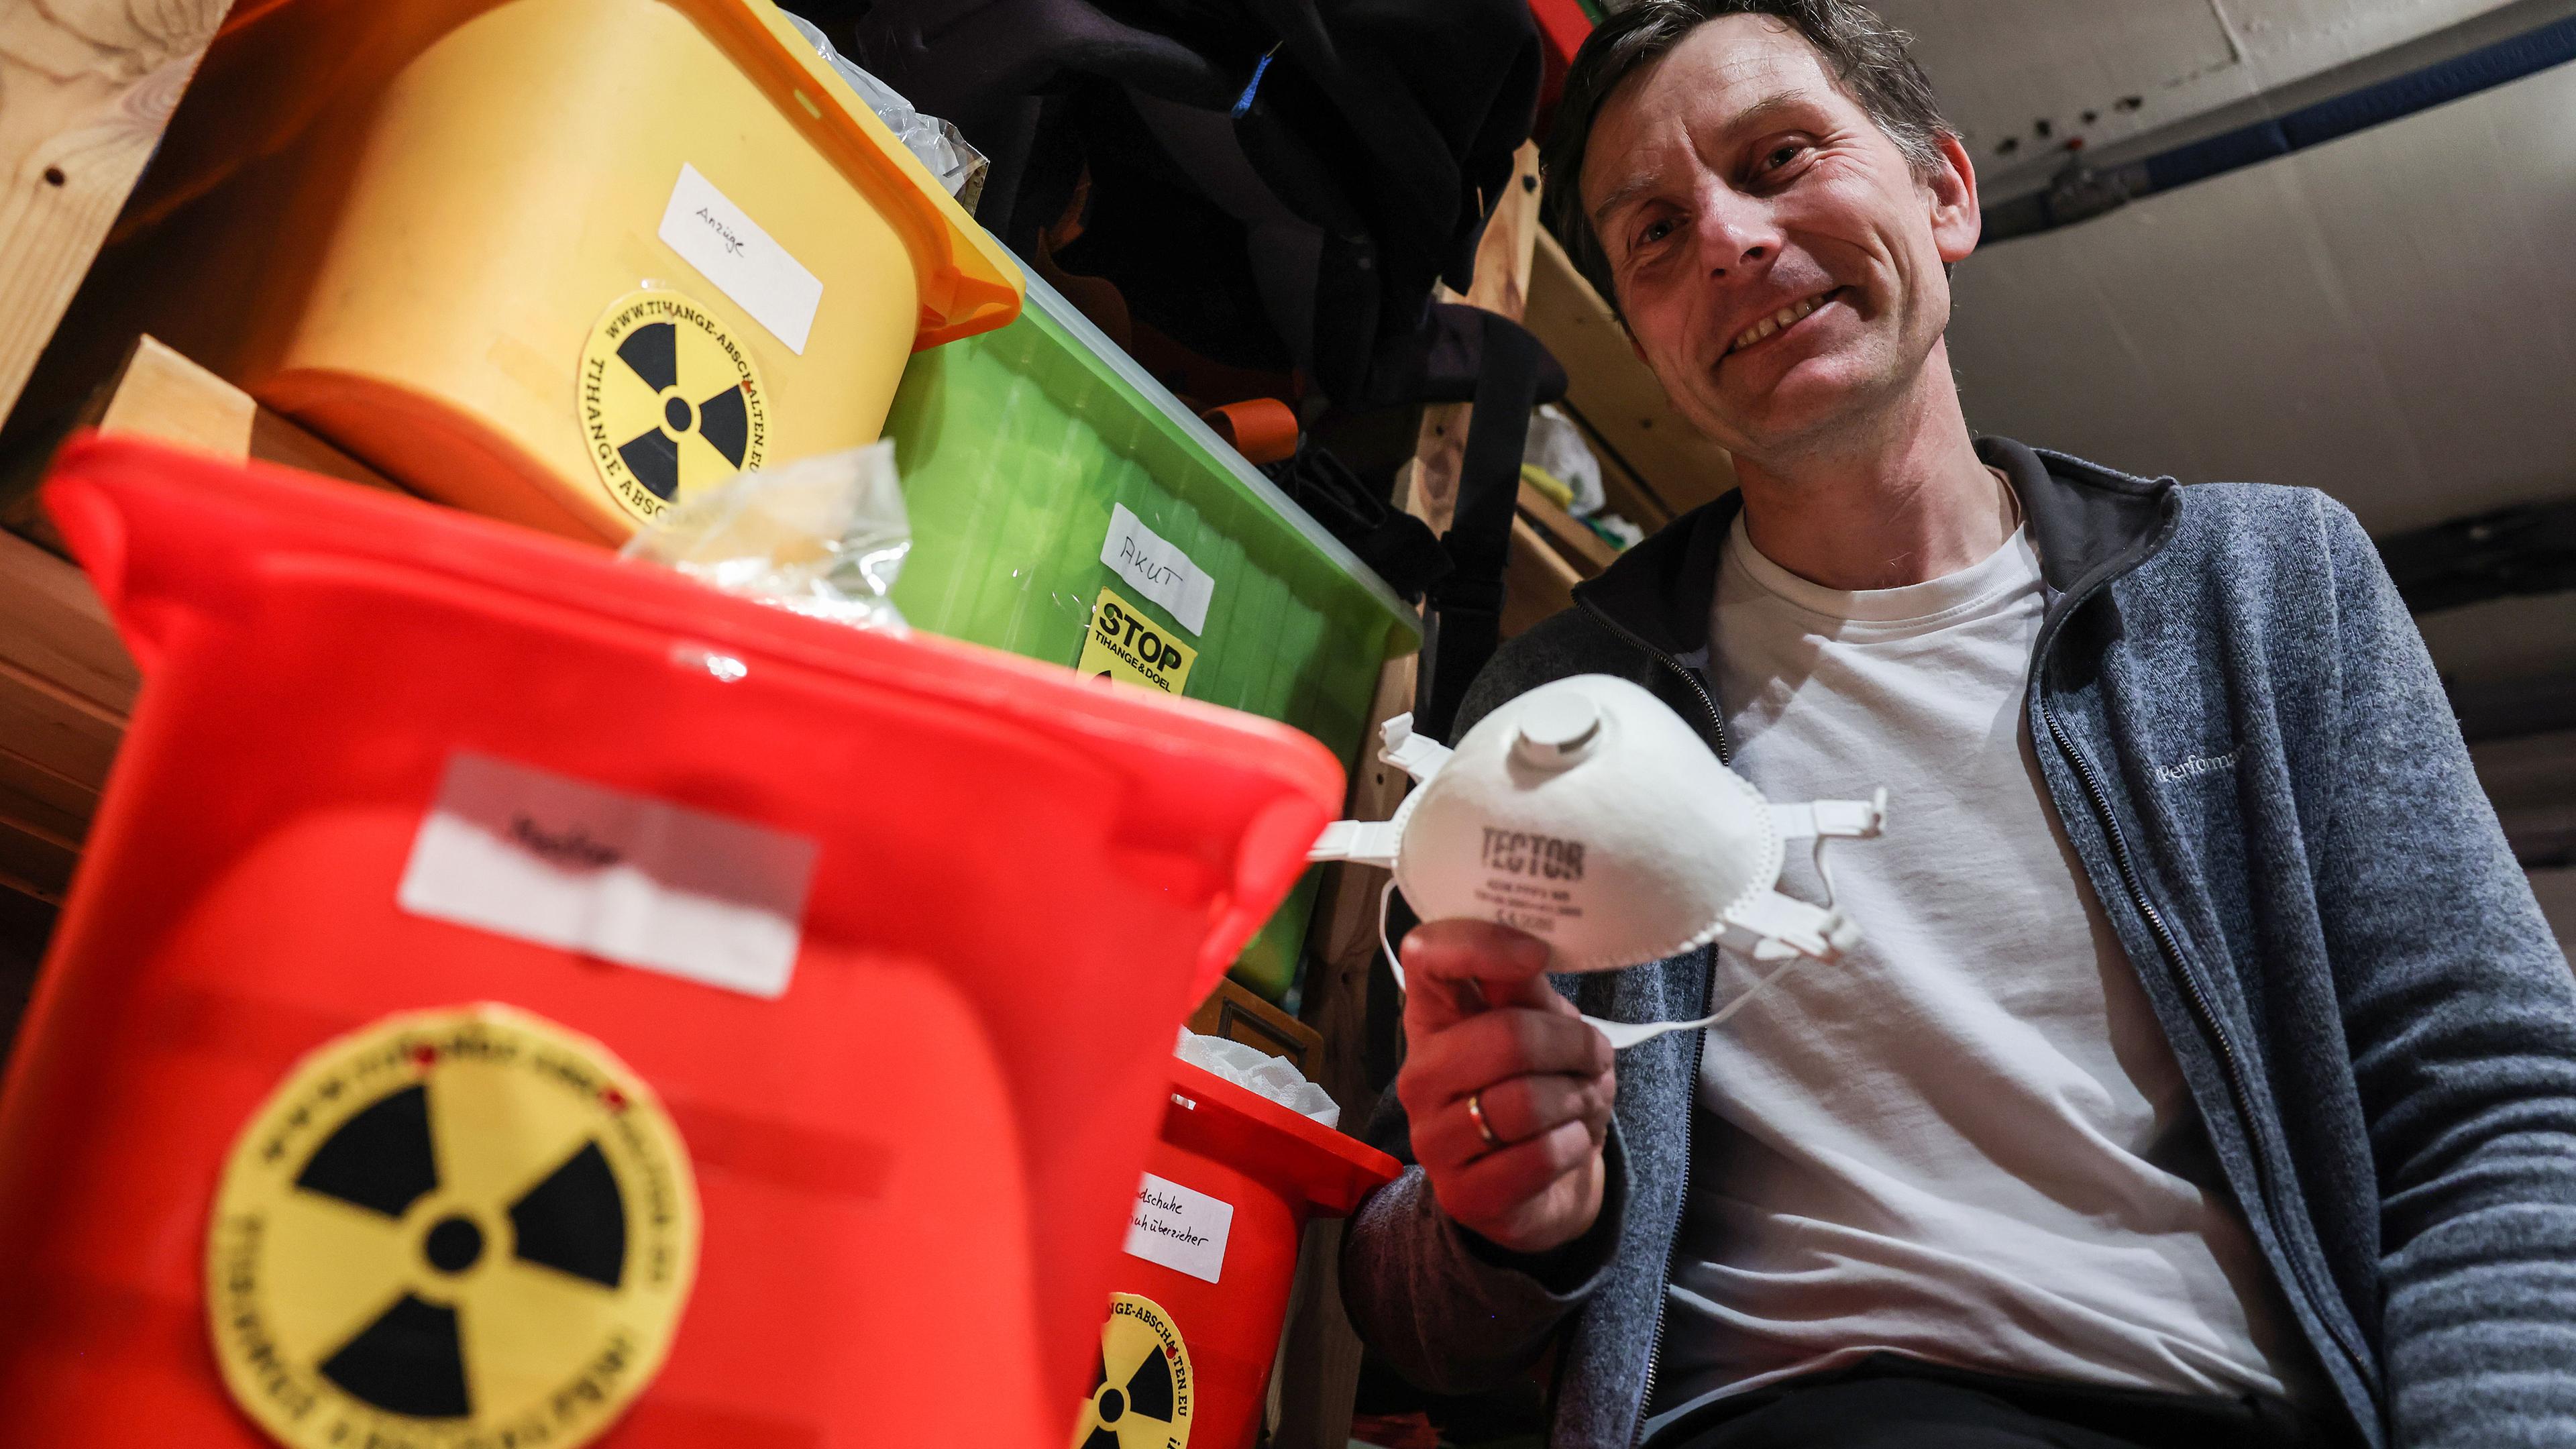 Gereon Hermens, Anti-Atomkraft-Aktivist, sitzt in seinem Keller neben Kisten mit Schutzausrüstungen. 